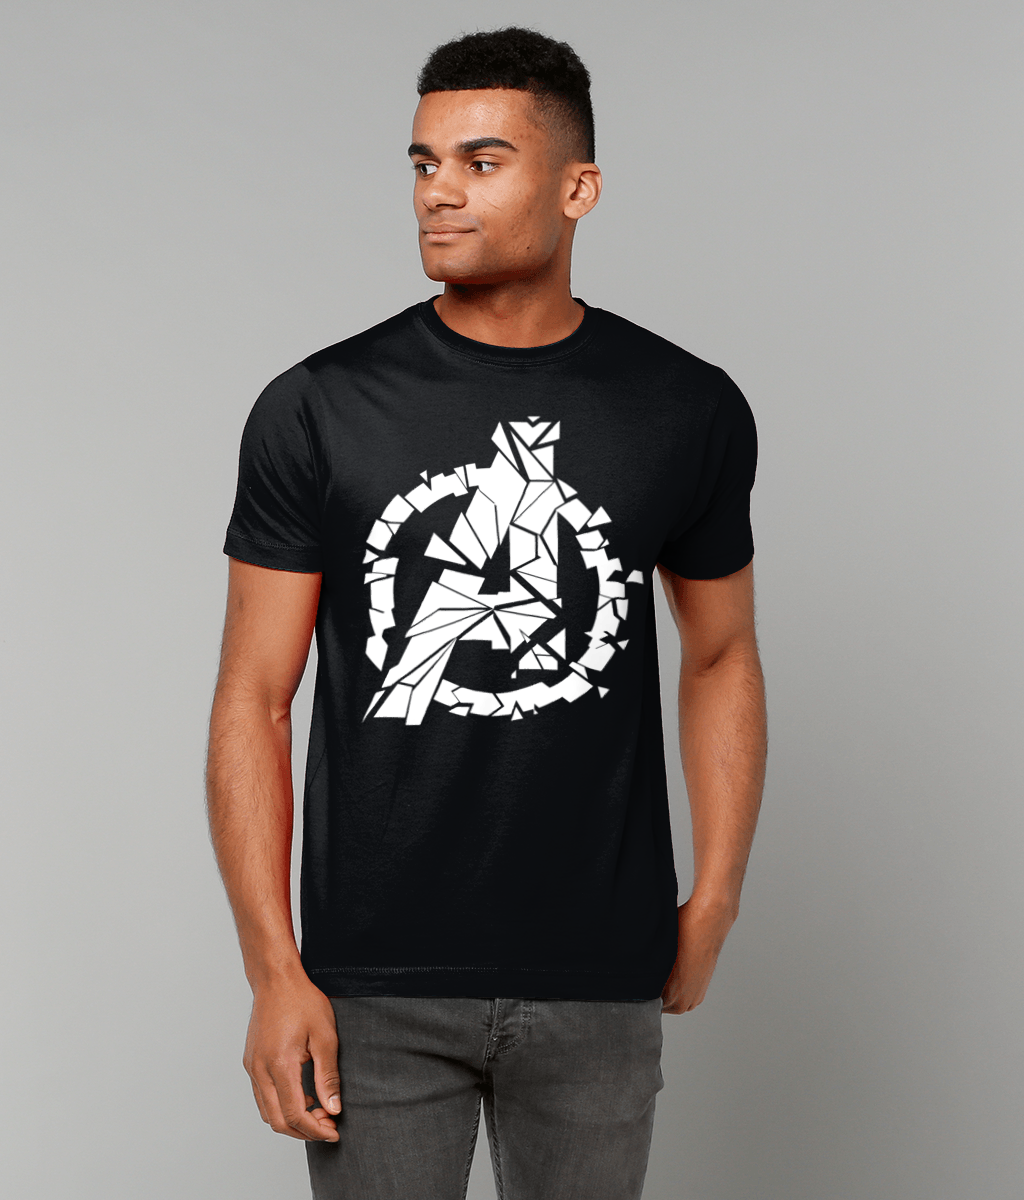 Avenger logo break:  T-Shirt